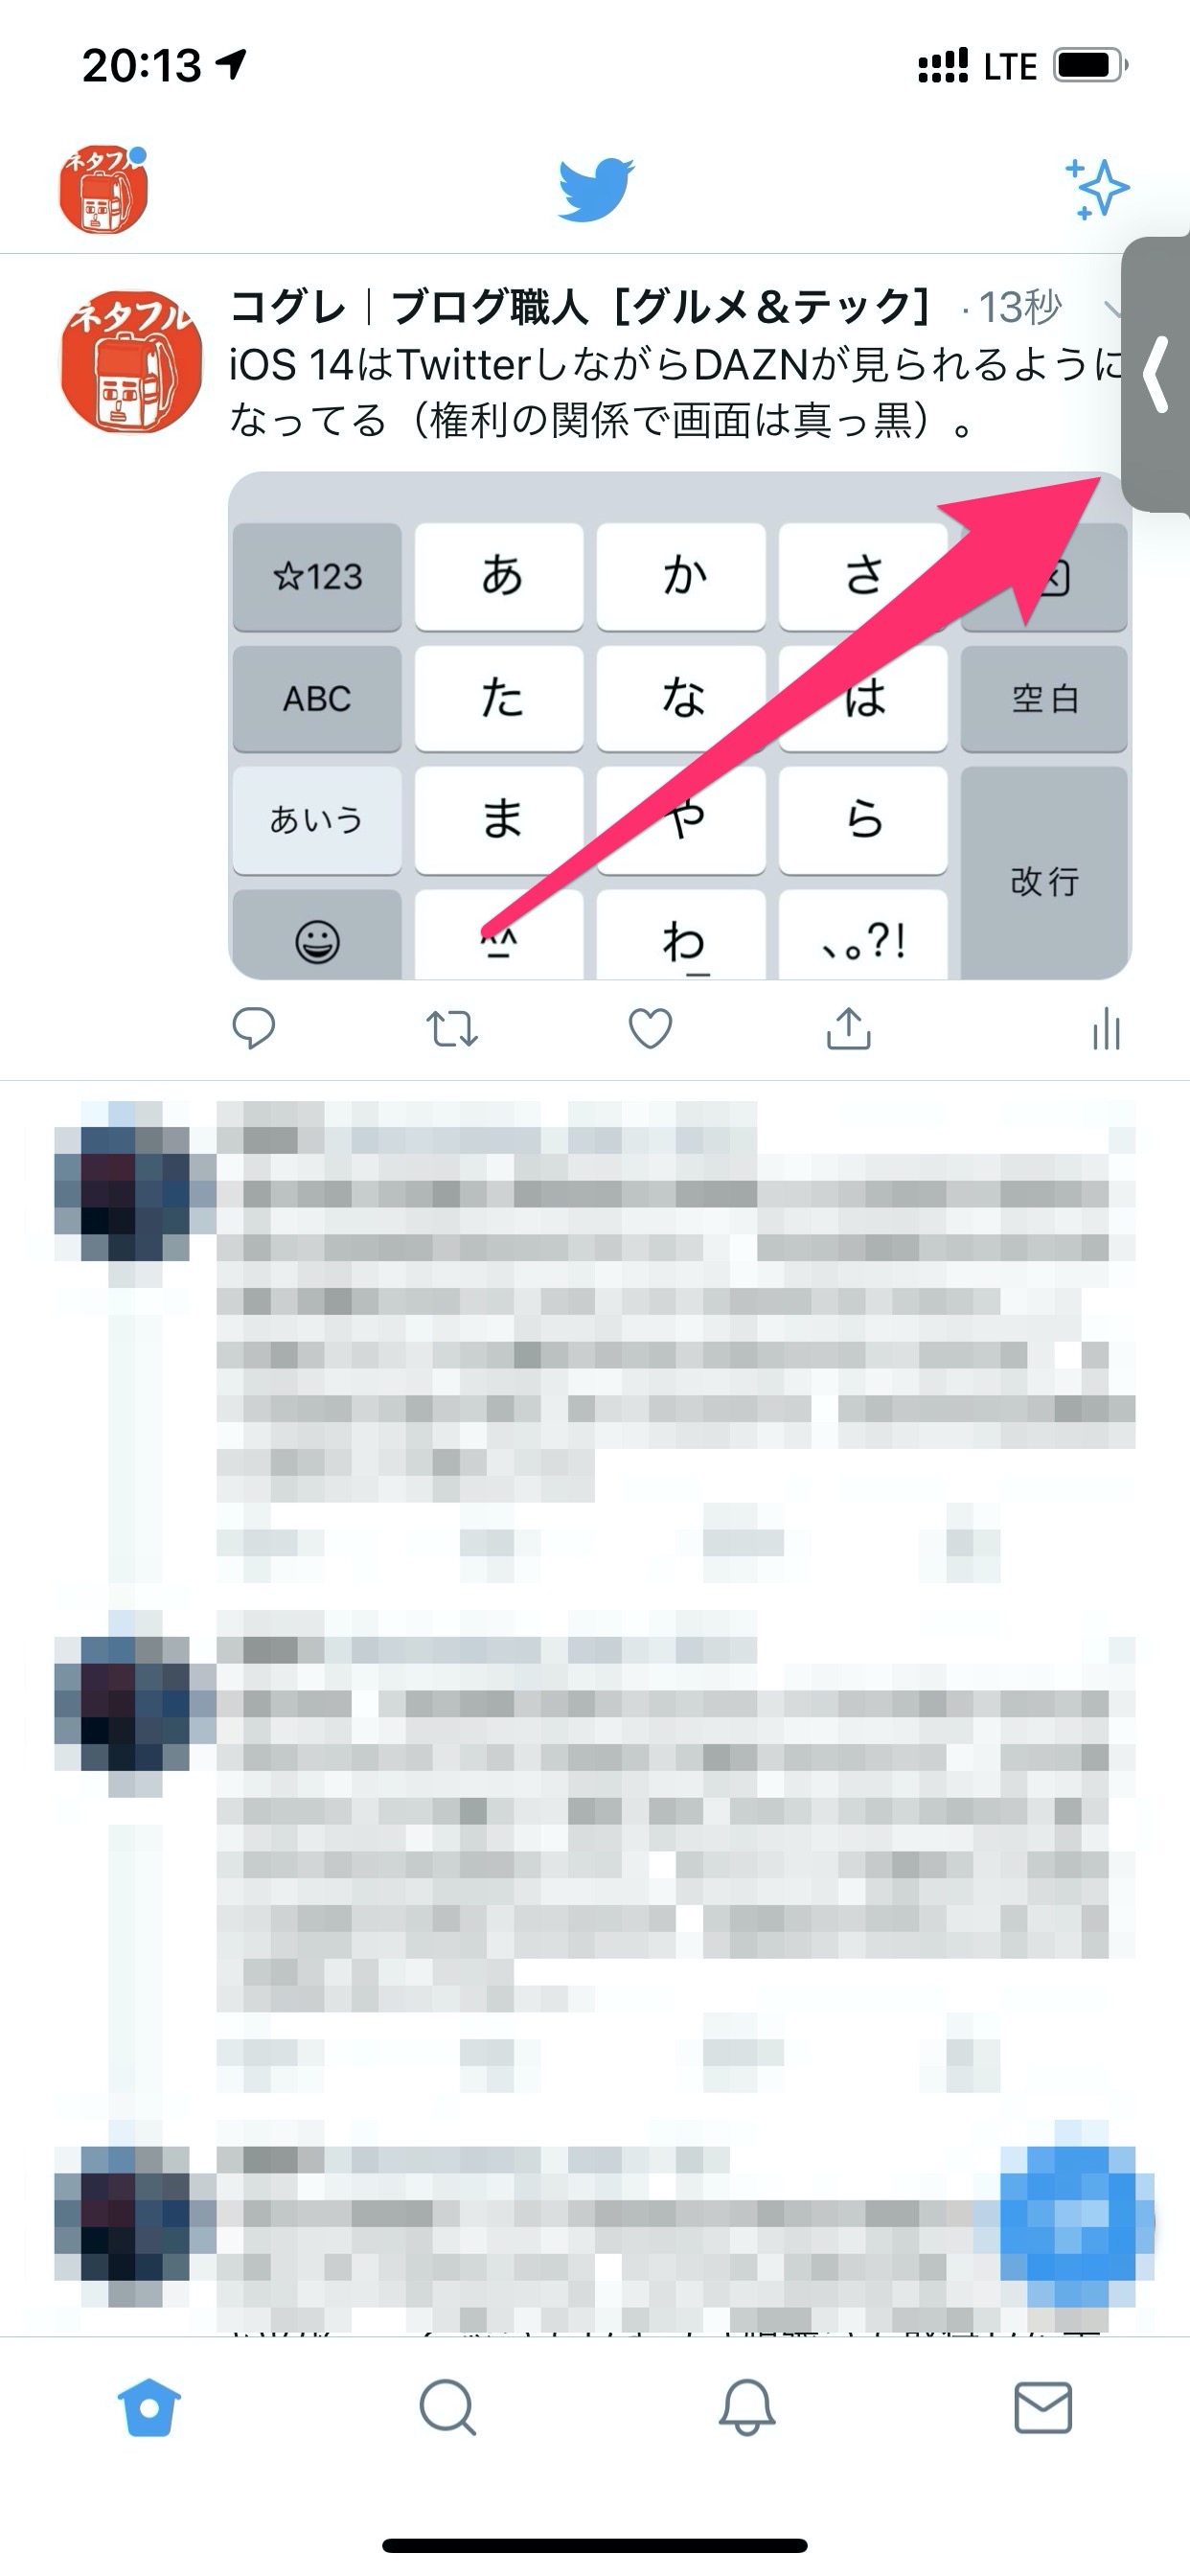 【iOS 14】TwitterしながらDAZNも観られる「ピクチャ・イン・ピクチャ」機能の使い方